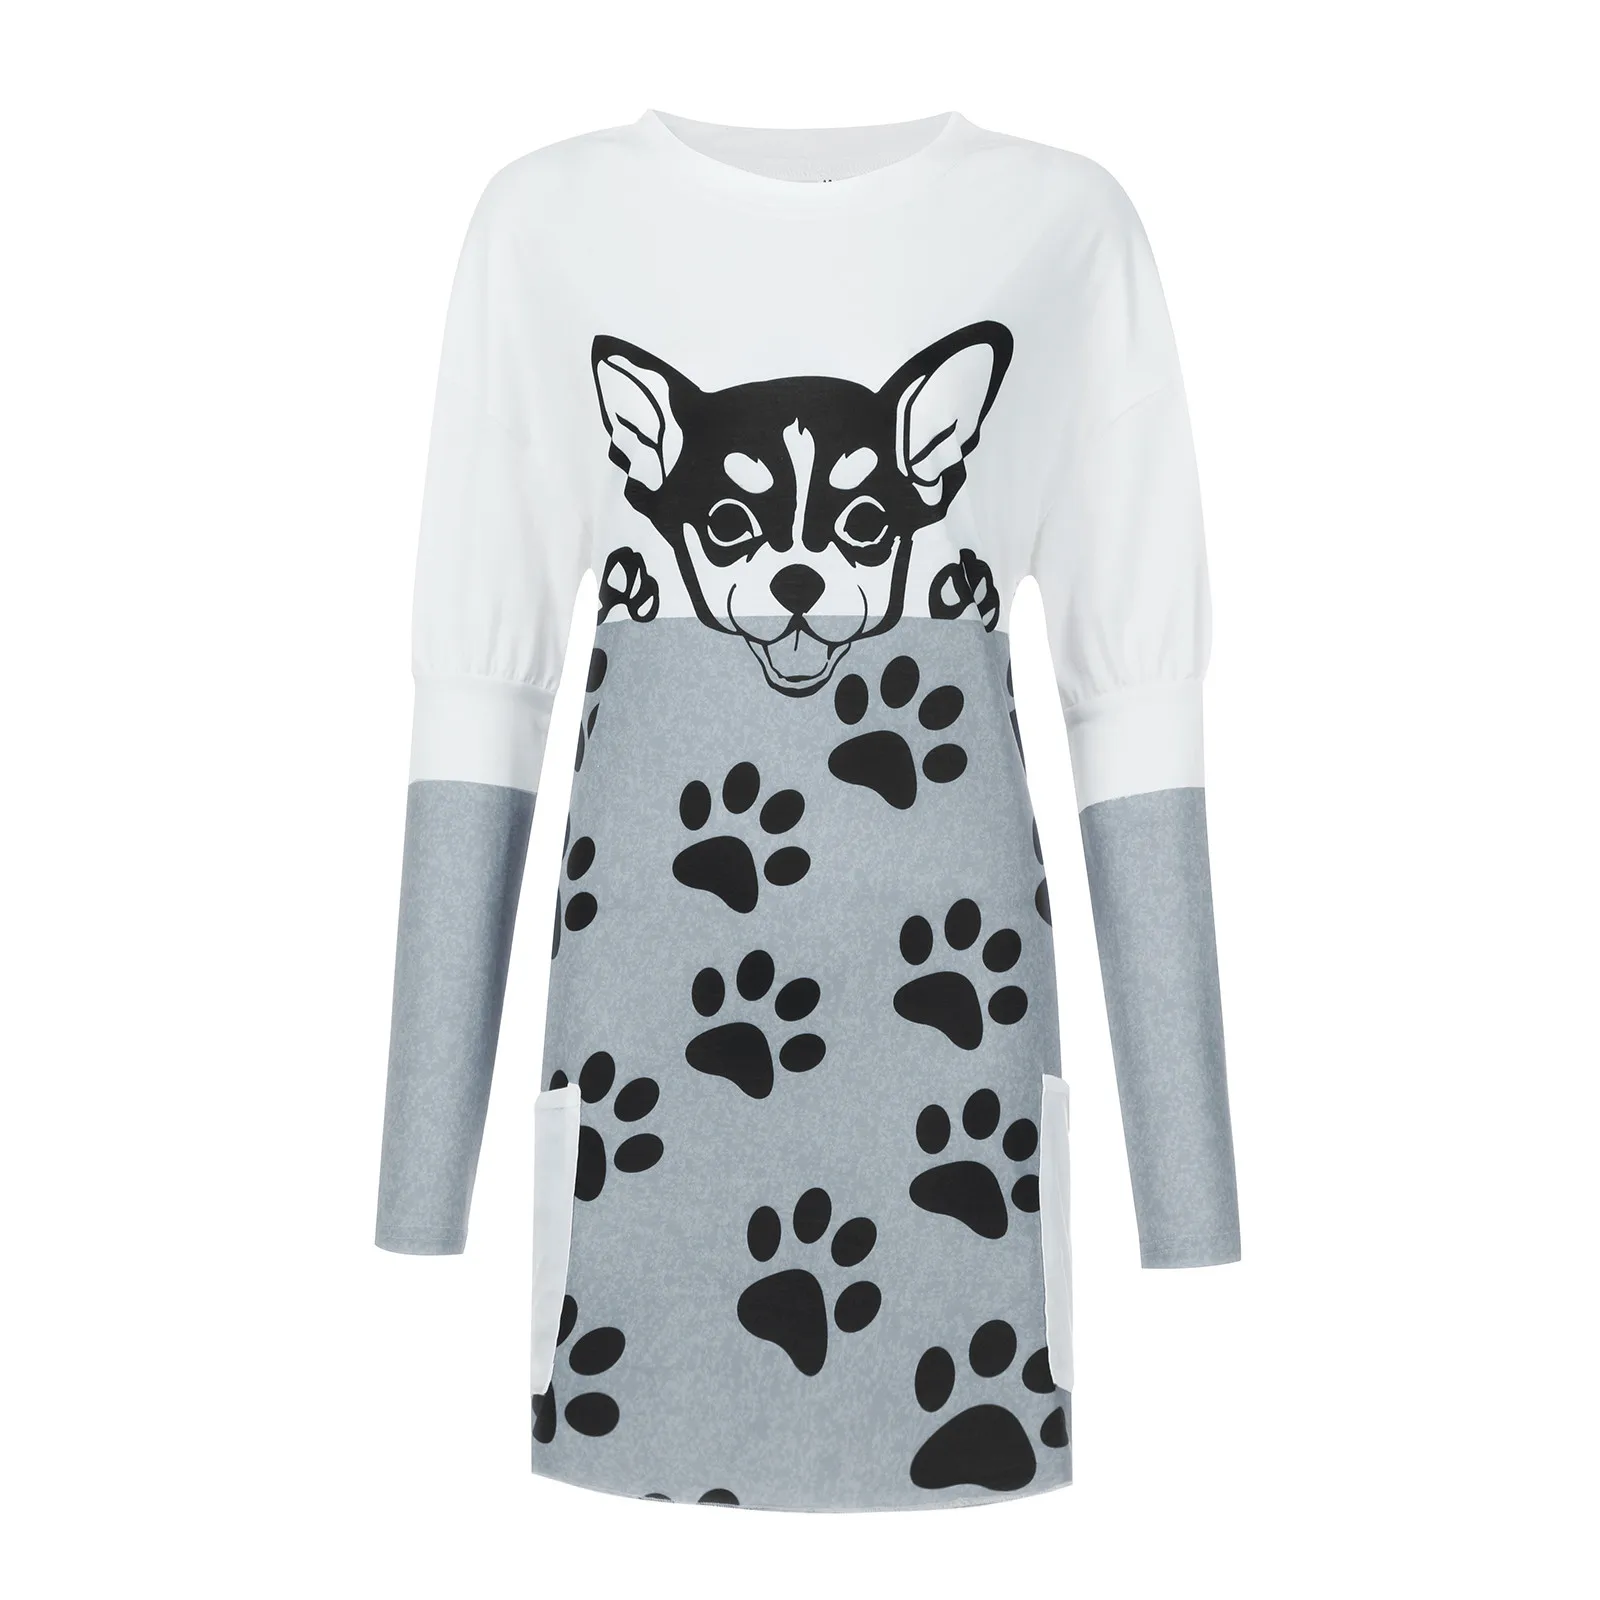 Женская футболка с принтом кошки модный топ двойными карманами и в стиле